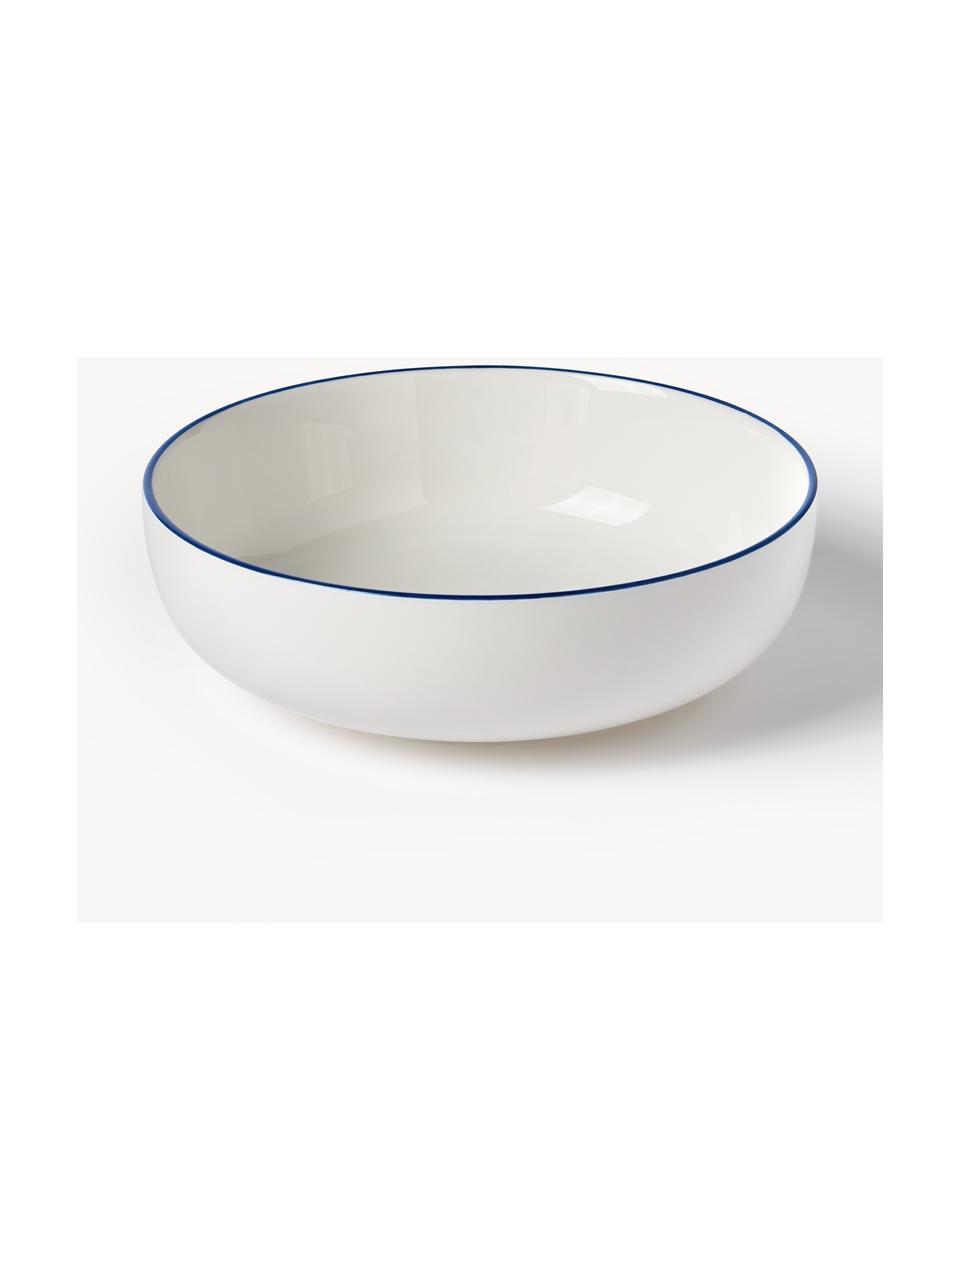 Sada porcelánového nádobí Facile, pro 6 osob (18 dílů), Vysoce kvalitní tvrdý porcelán (cca 50 % kaolinu, 25 % křemene a 25 % živce), Tlumeně bílá s tmavě modrým okrajem, Pro 6 osob (18 dílů)